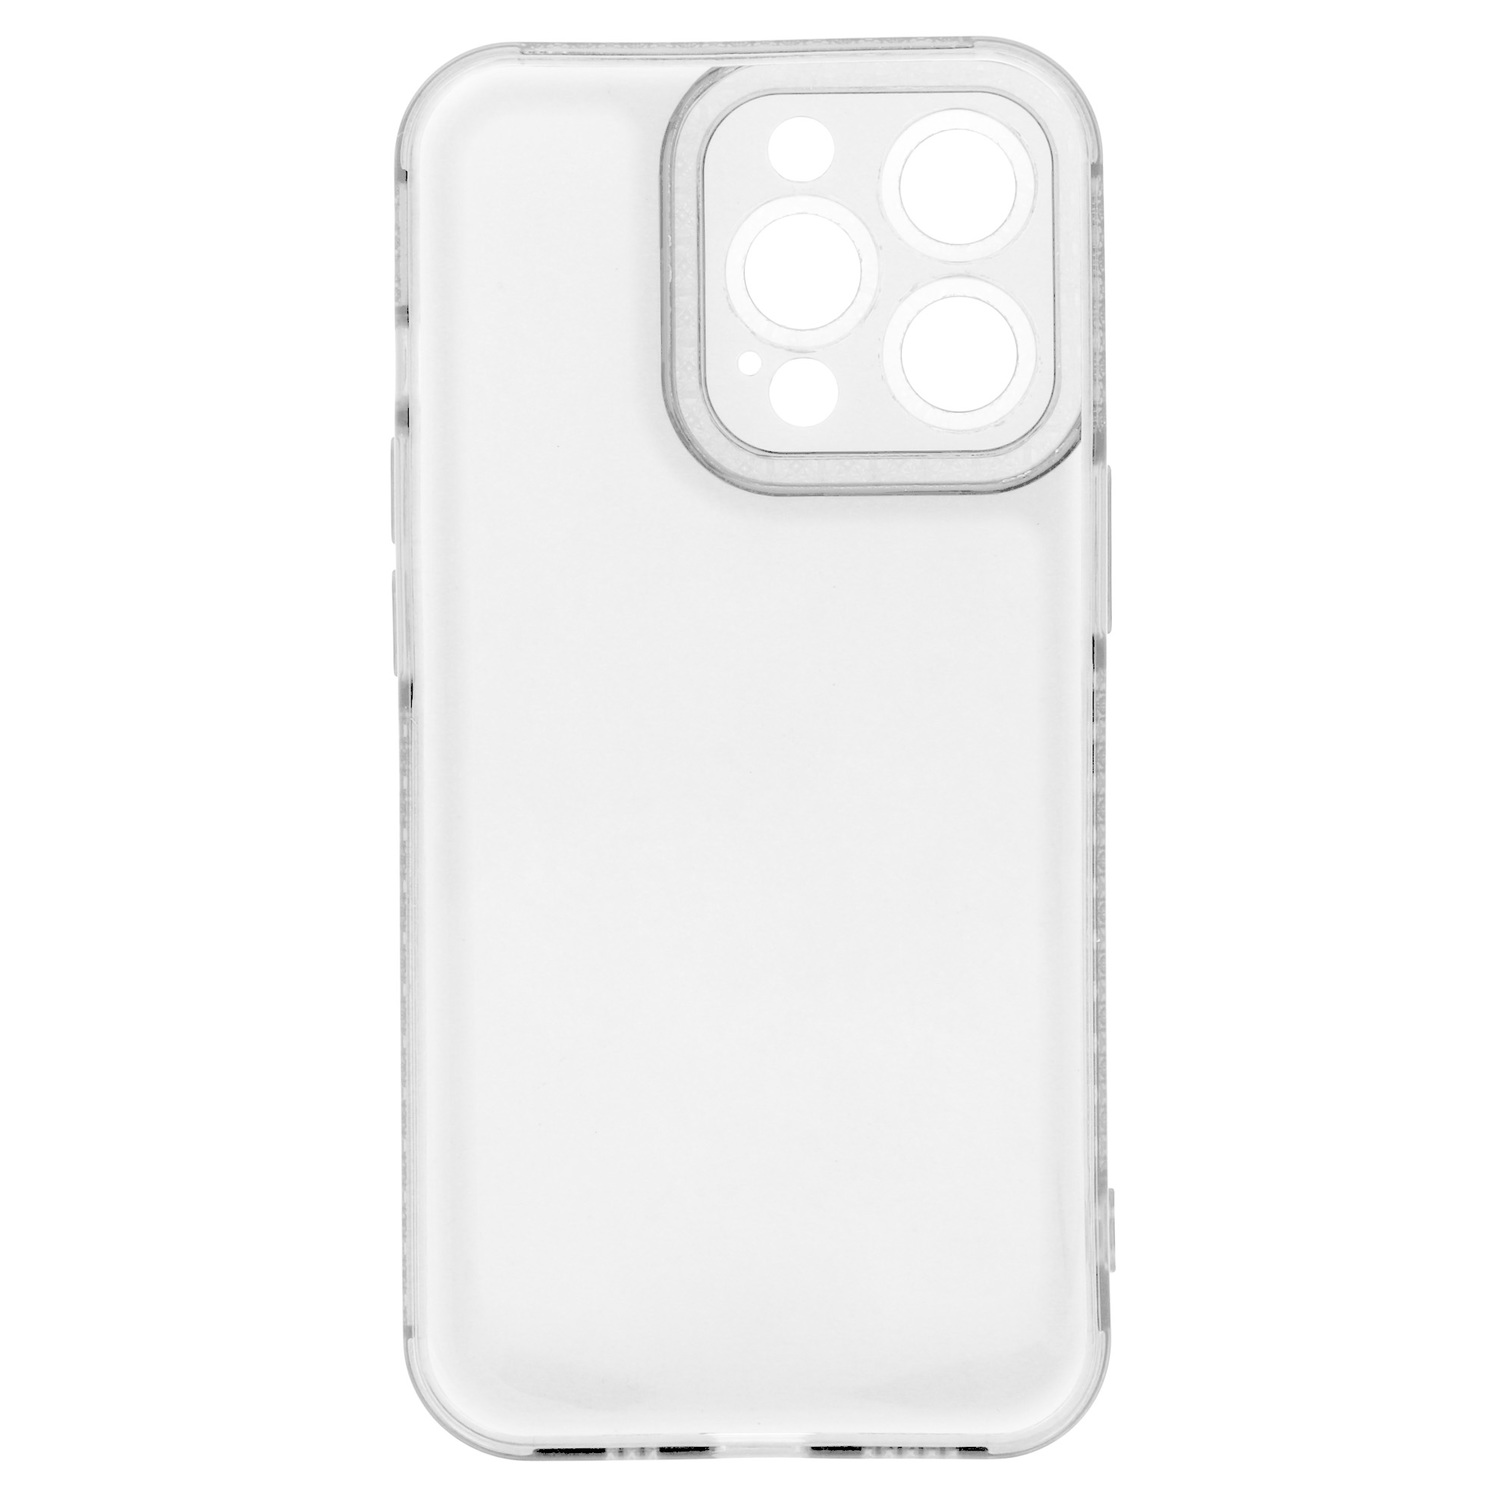 Pokrowiec etui silikonowe Crystal Diamond Case przezroczyste APPLE iPhone 11 Pro / 5